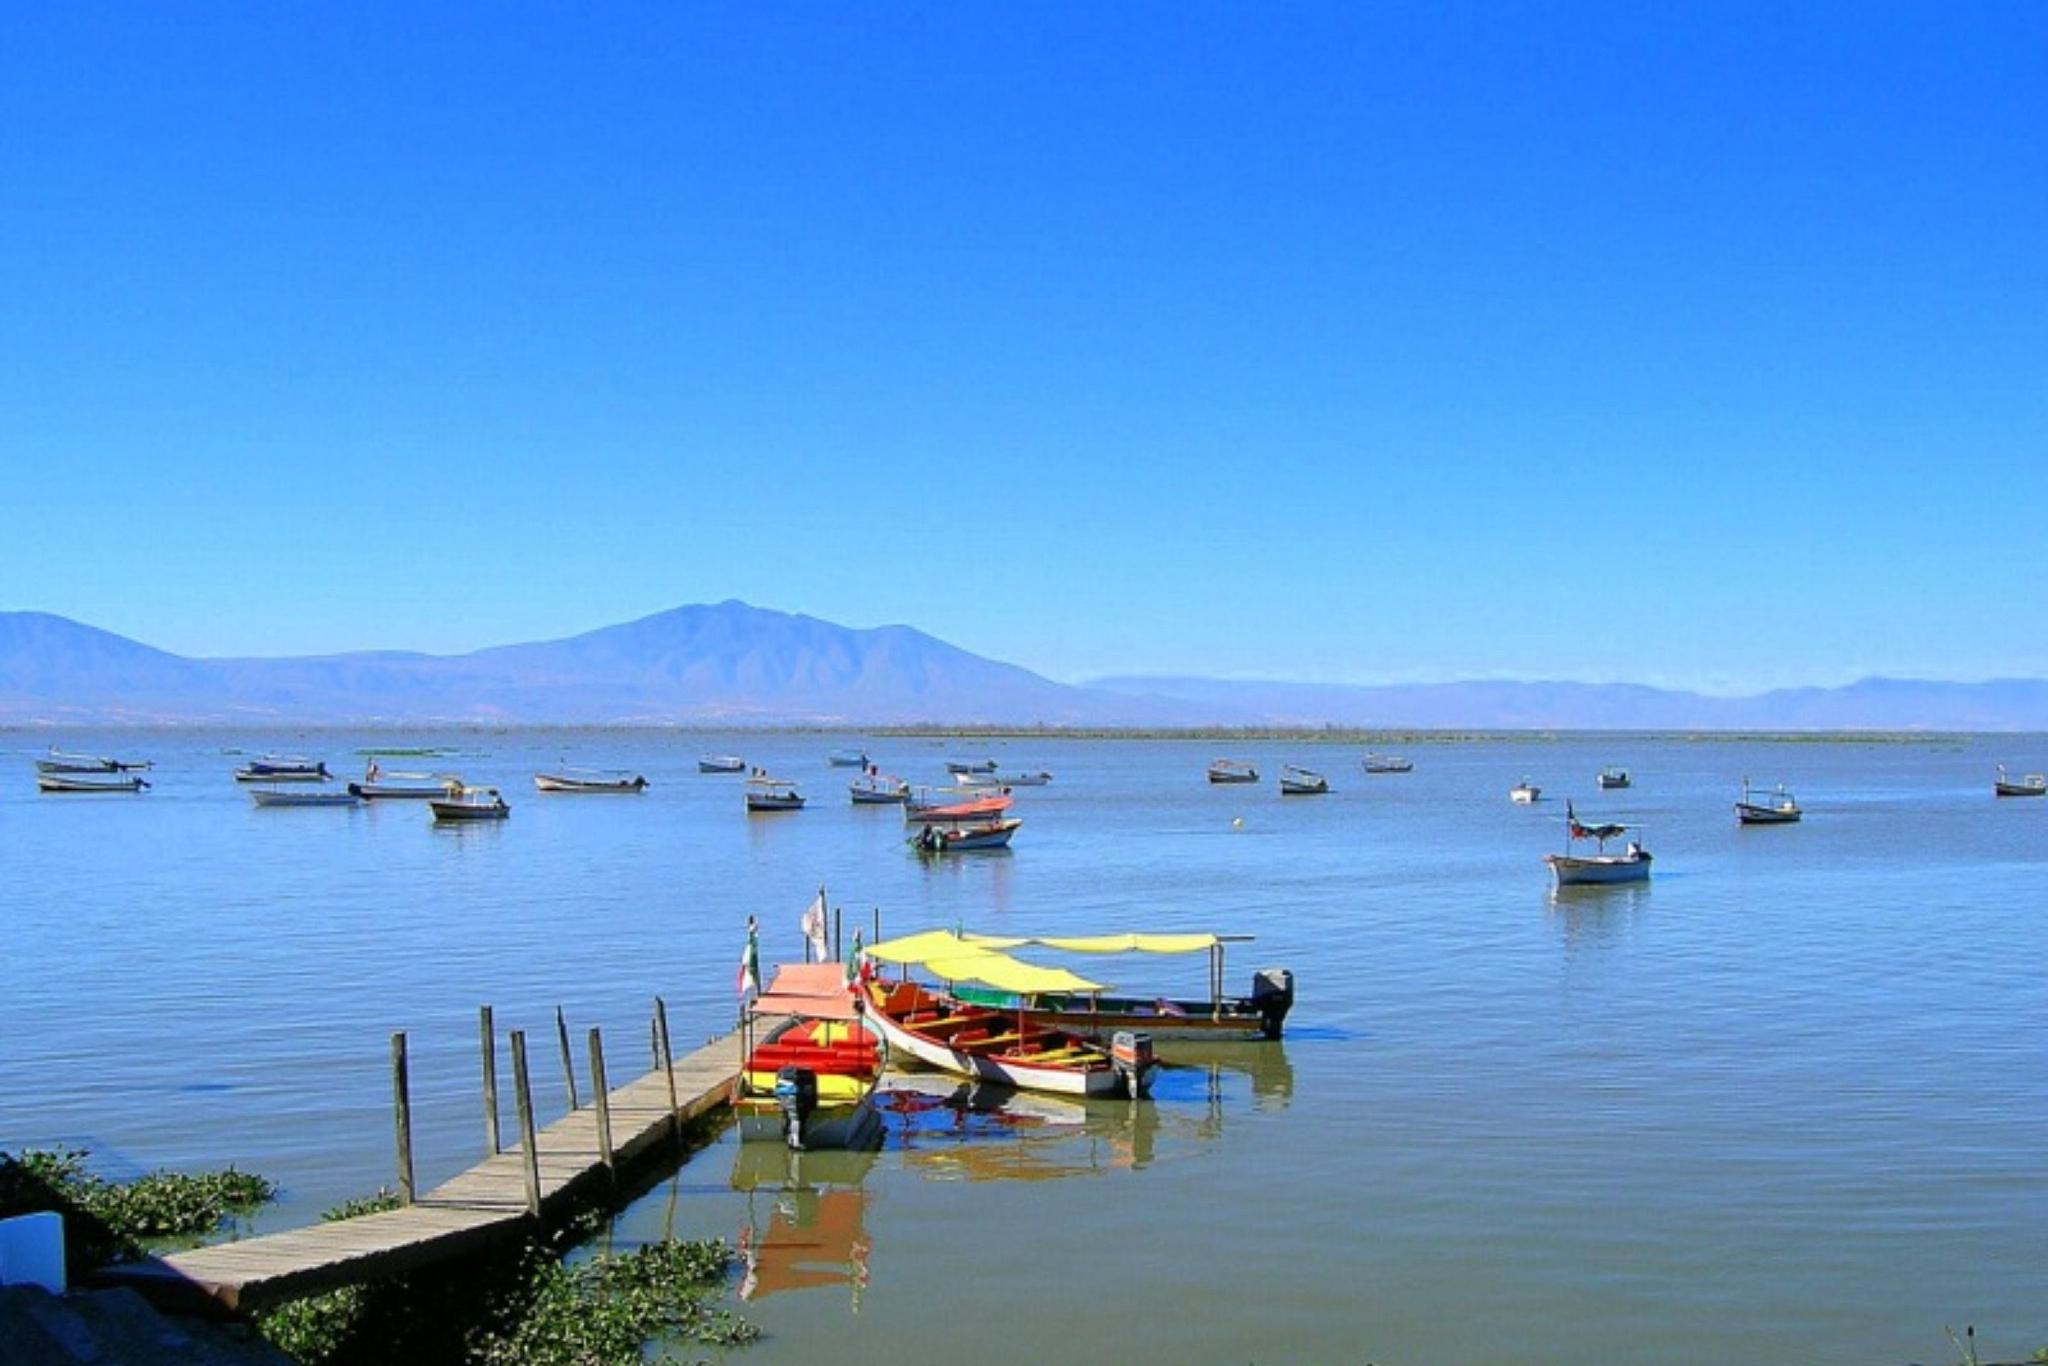 四川沪沽湖之行 绵延的大地上,有一个美丽的天然湖泊——沪沽湖